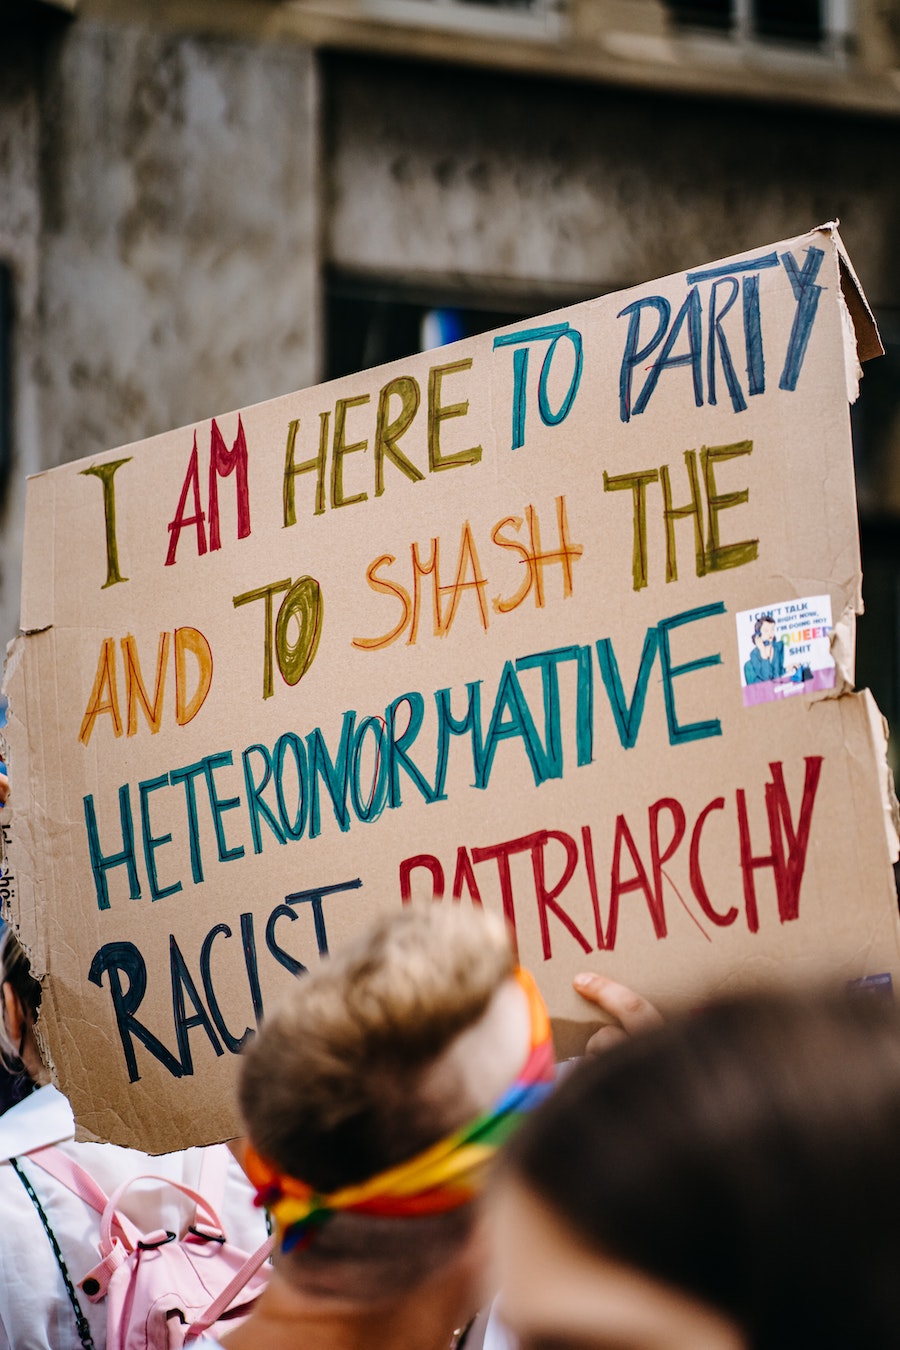 Ici pour faire le party, et battre le patriarcat raciste et hétéronormatif